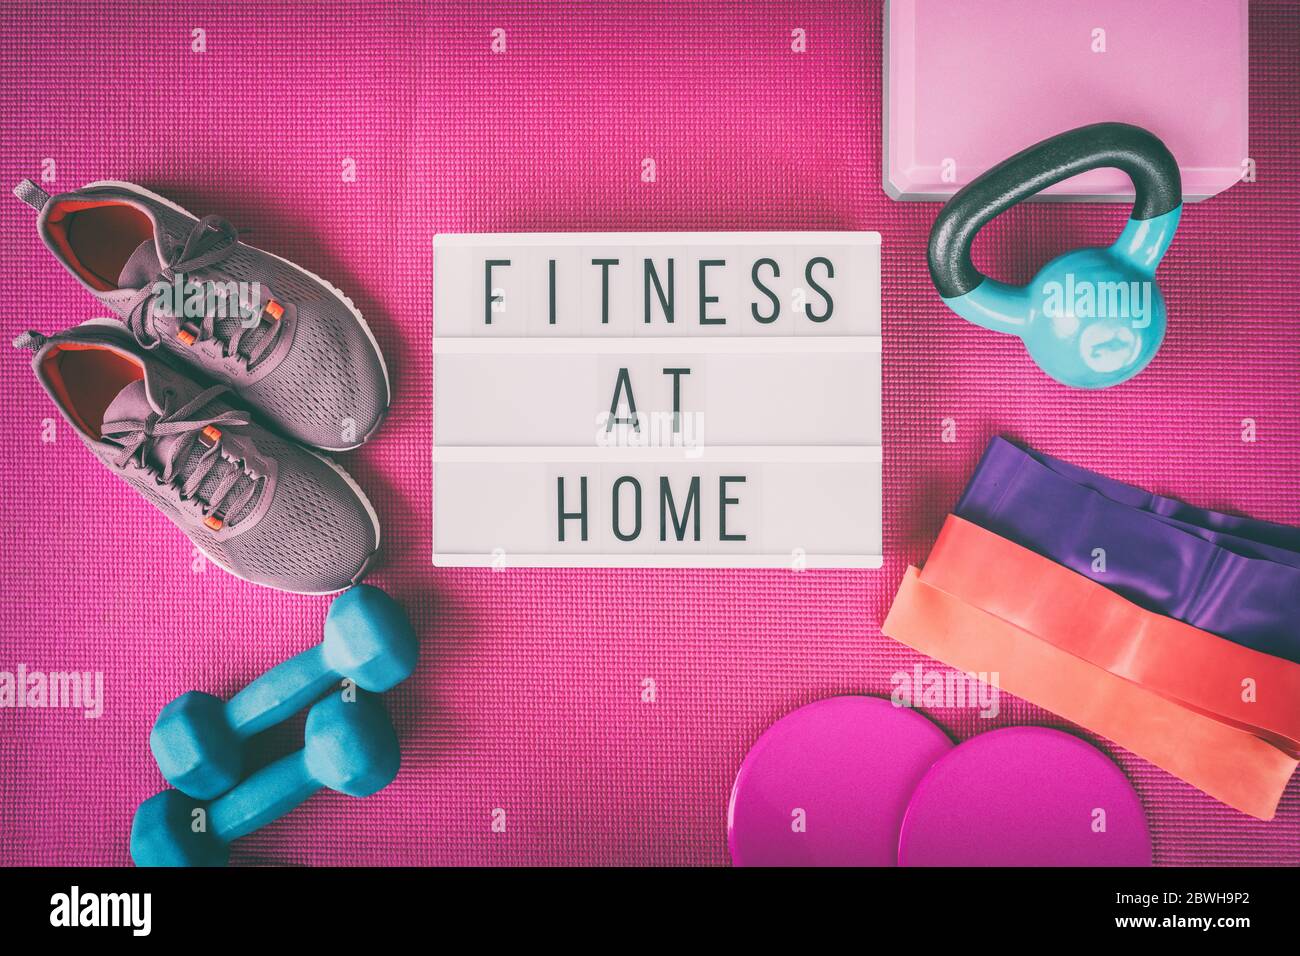 Fitness zu Hause Schild mit rosa Yoga-Matte, Laufschuhe, Kettlebell Gewicht  und Hanteln Widerstandsbänder und Slider für Pilates Online-Klasse. Übung  drinnen für Frauen Stockfotografie - Alamy